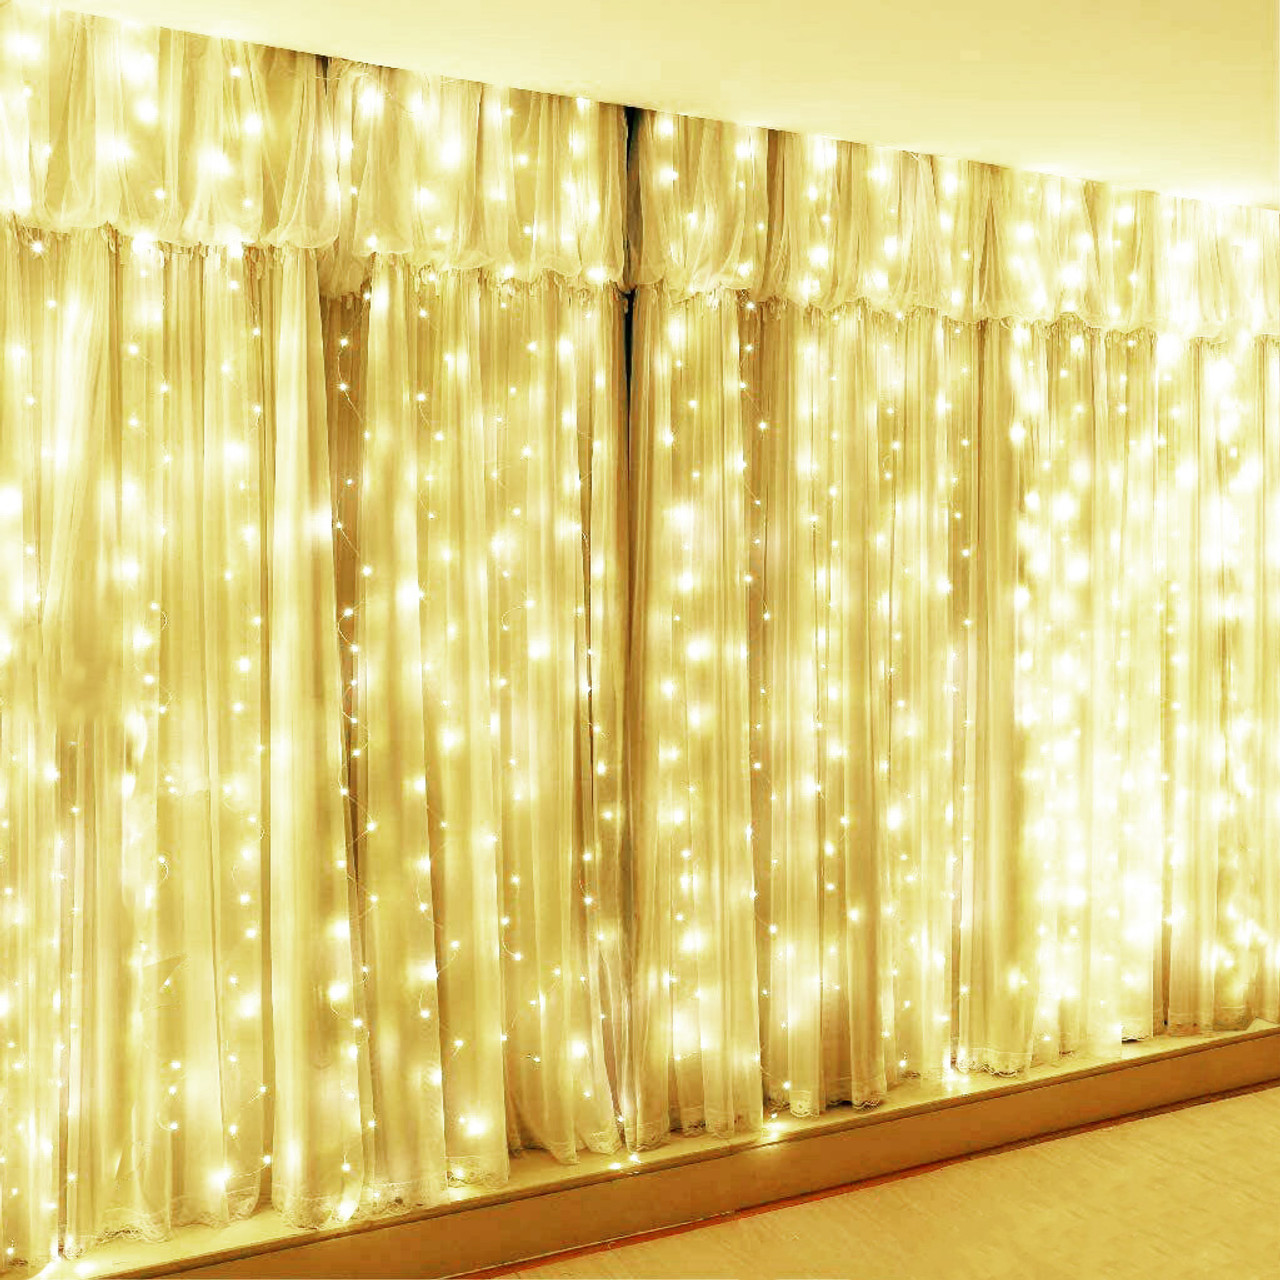 Đẹp mơ màng và lãng mạn hơn bao giờ hết với Wedding Curtain Fairy Backdrop Lights. Chiếc rèm phủ đầy ánh sáng này sẽ tạo ra một không gian đầy kỷ niệm cho ngày cưới của bạn.